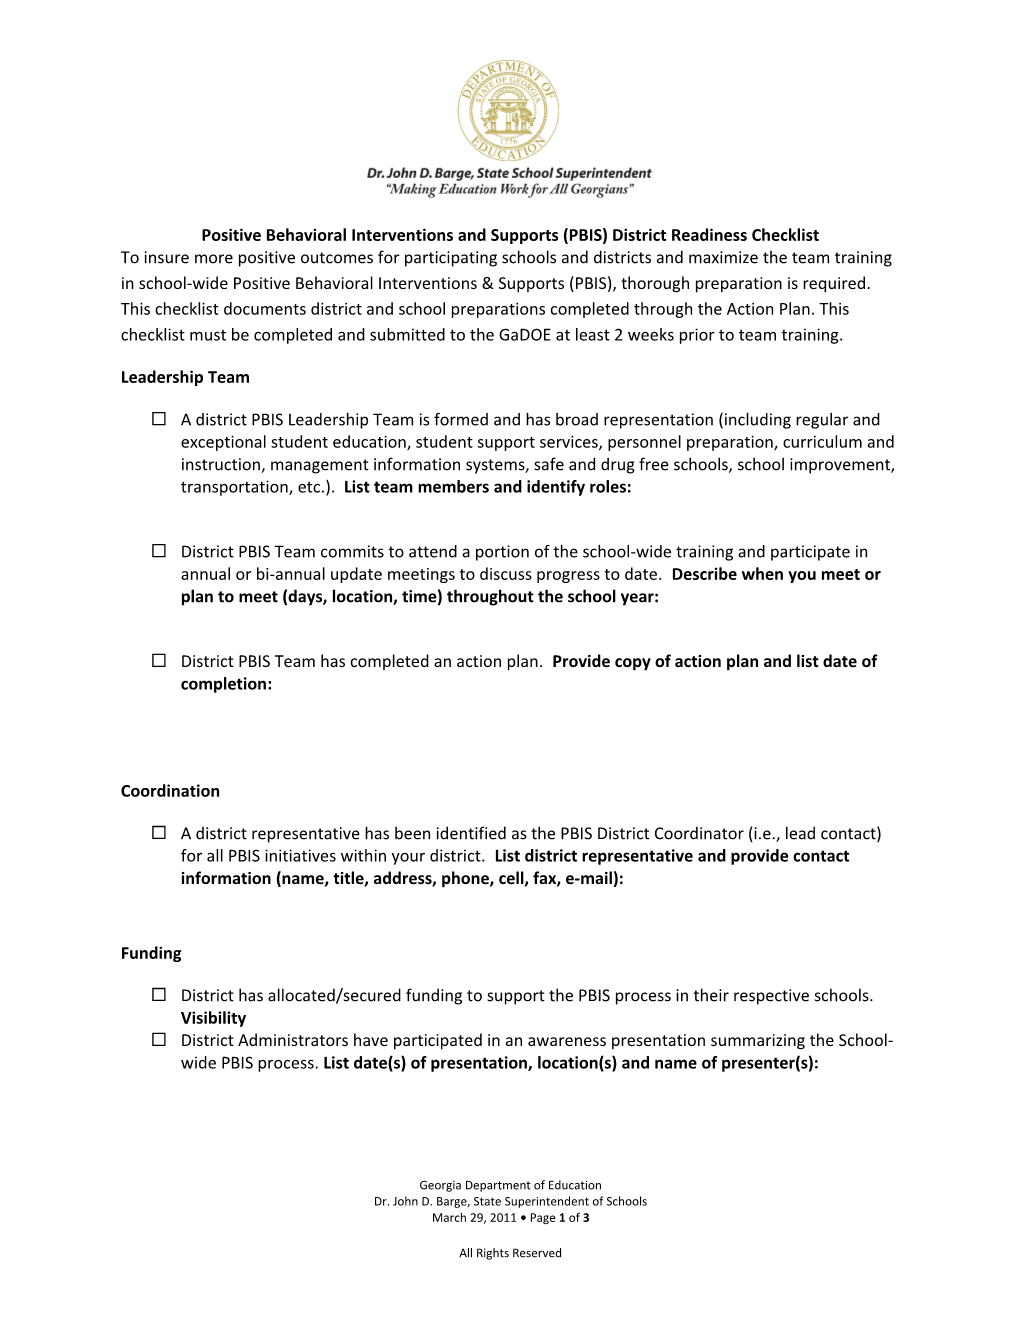 PBIS District Readiness Checklist